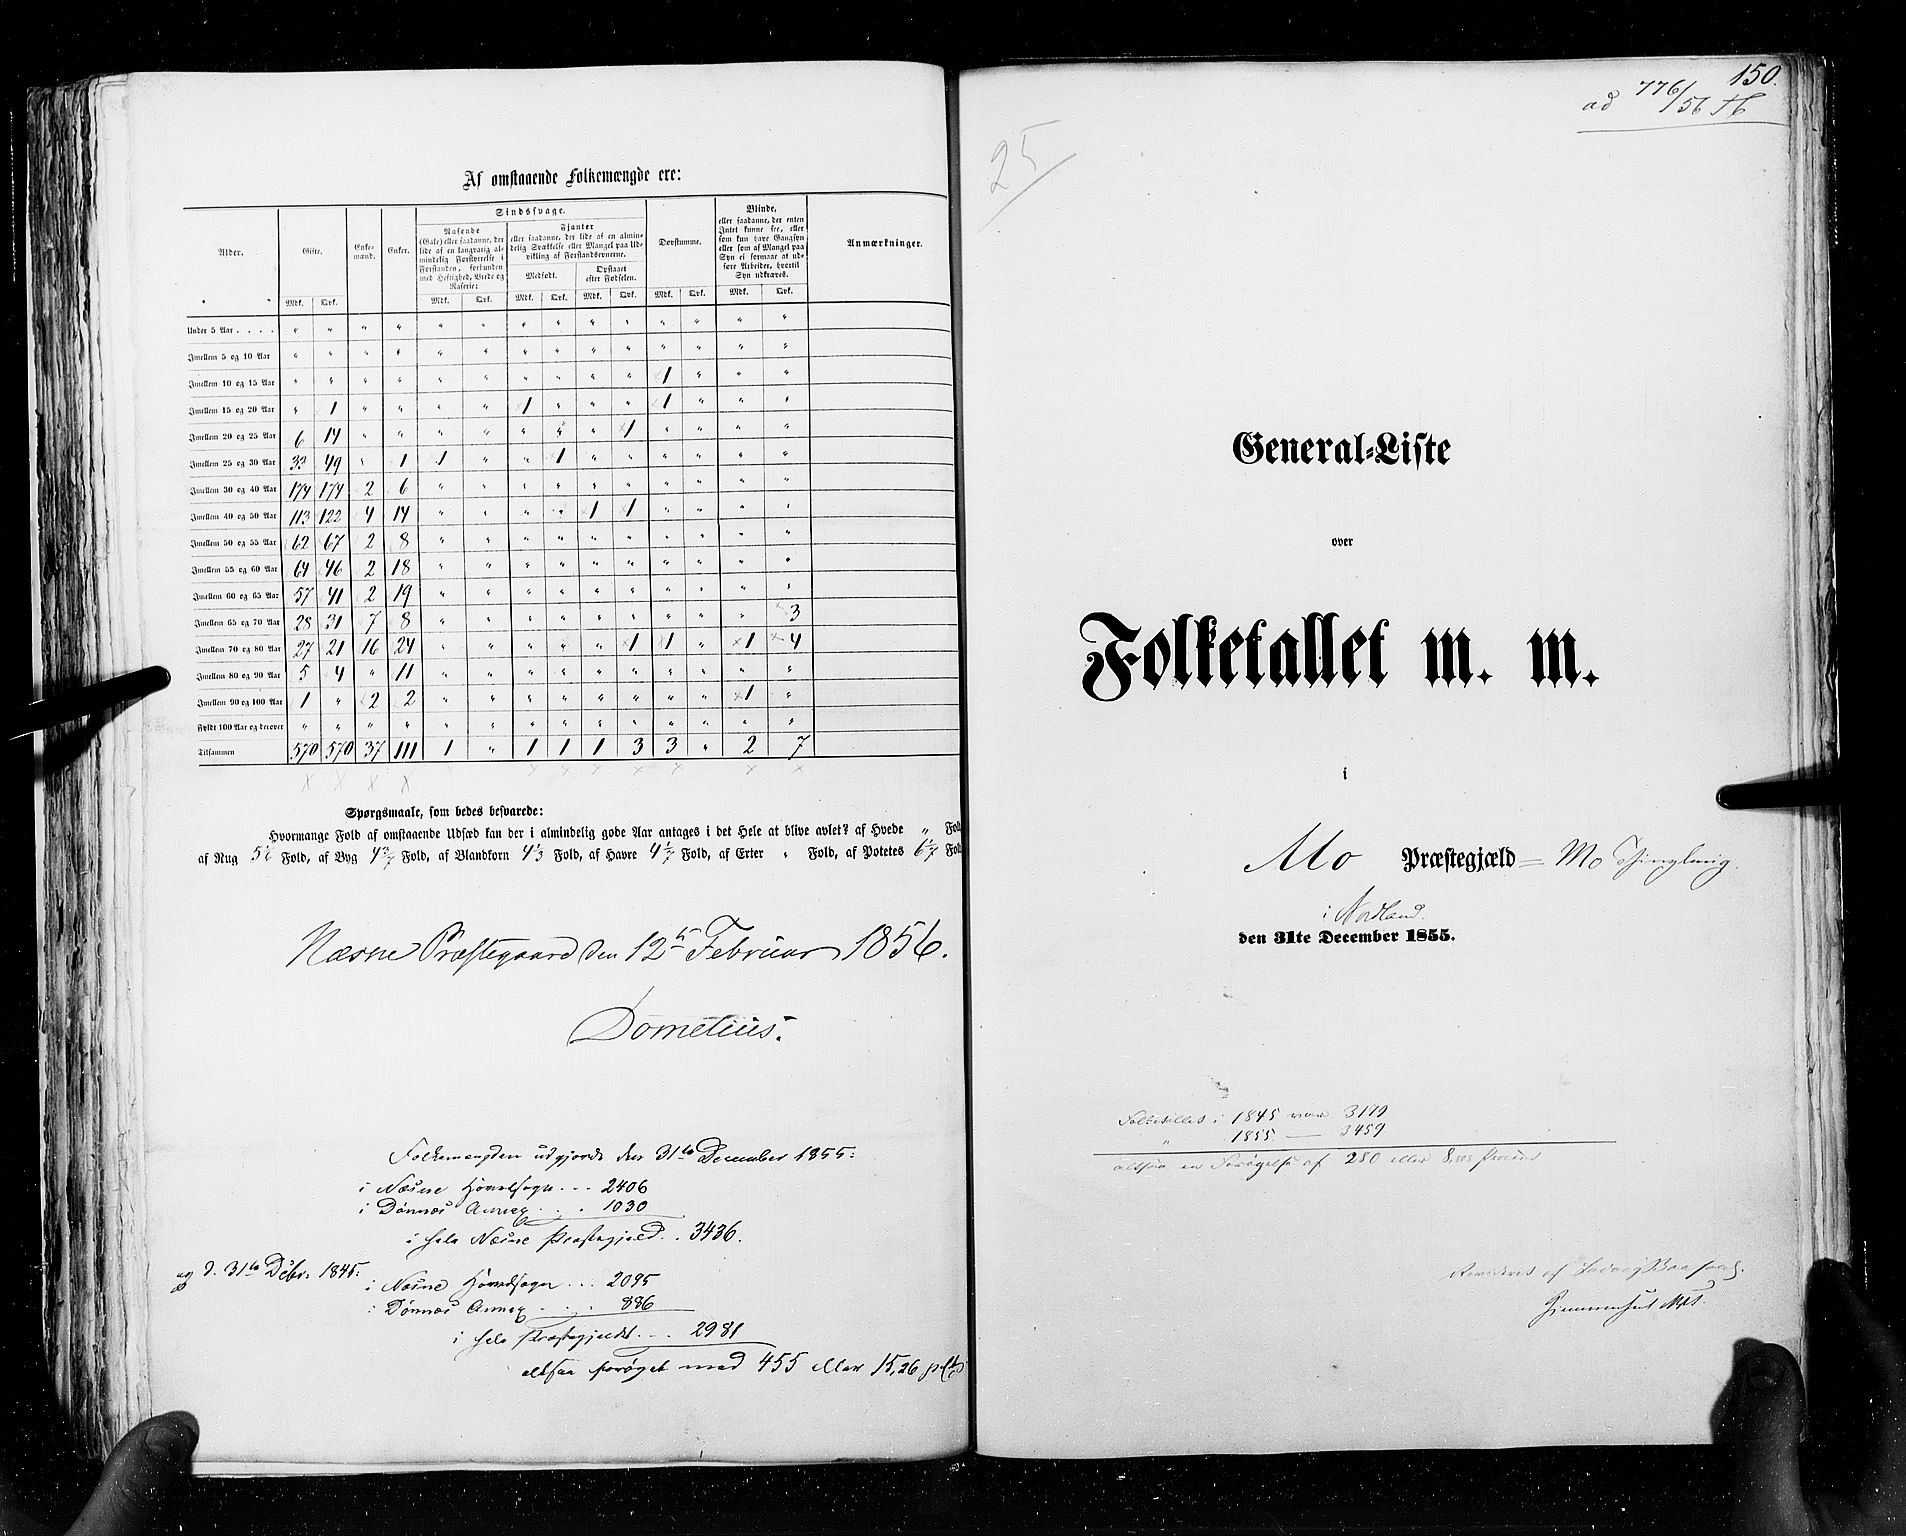 RA, Folketellingen 1855, bind 6A: Nordre Trondhjem amt og Nordland amt, 1855, s. 150